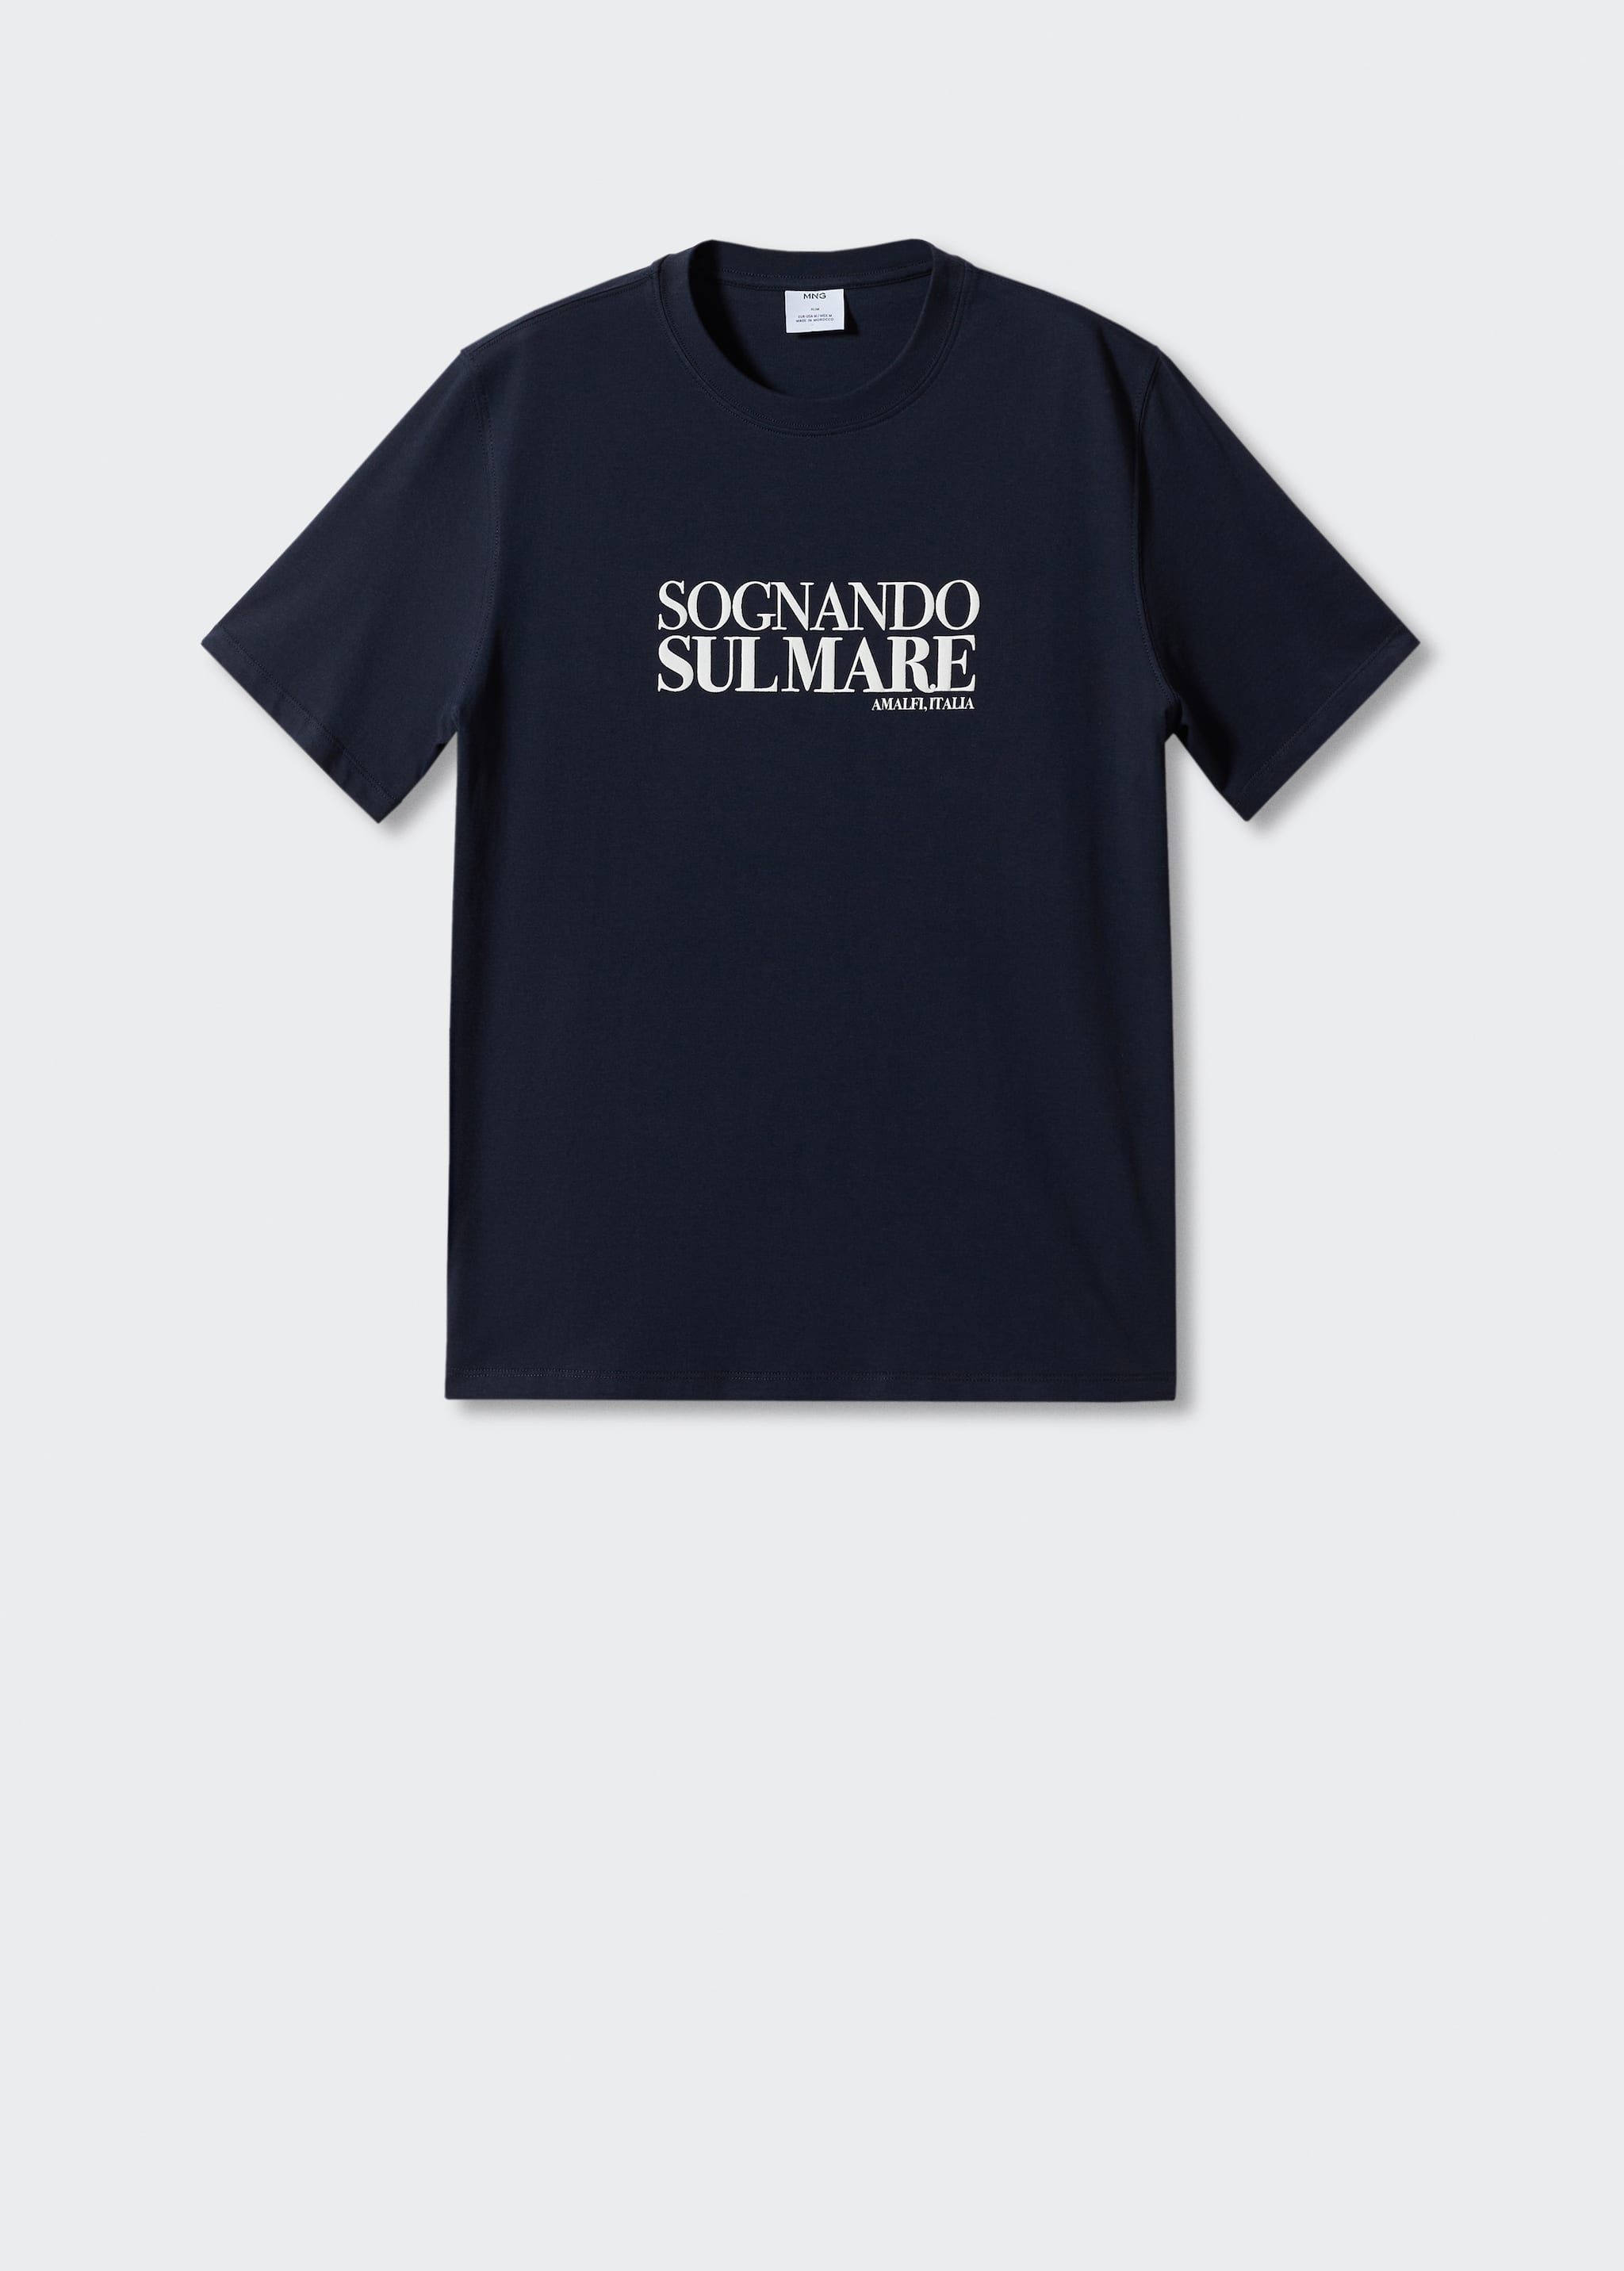 Camiseta algodón mensaje estampado - Artículo sin modelo